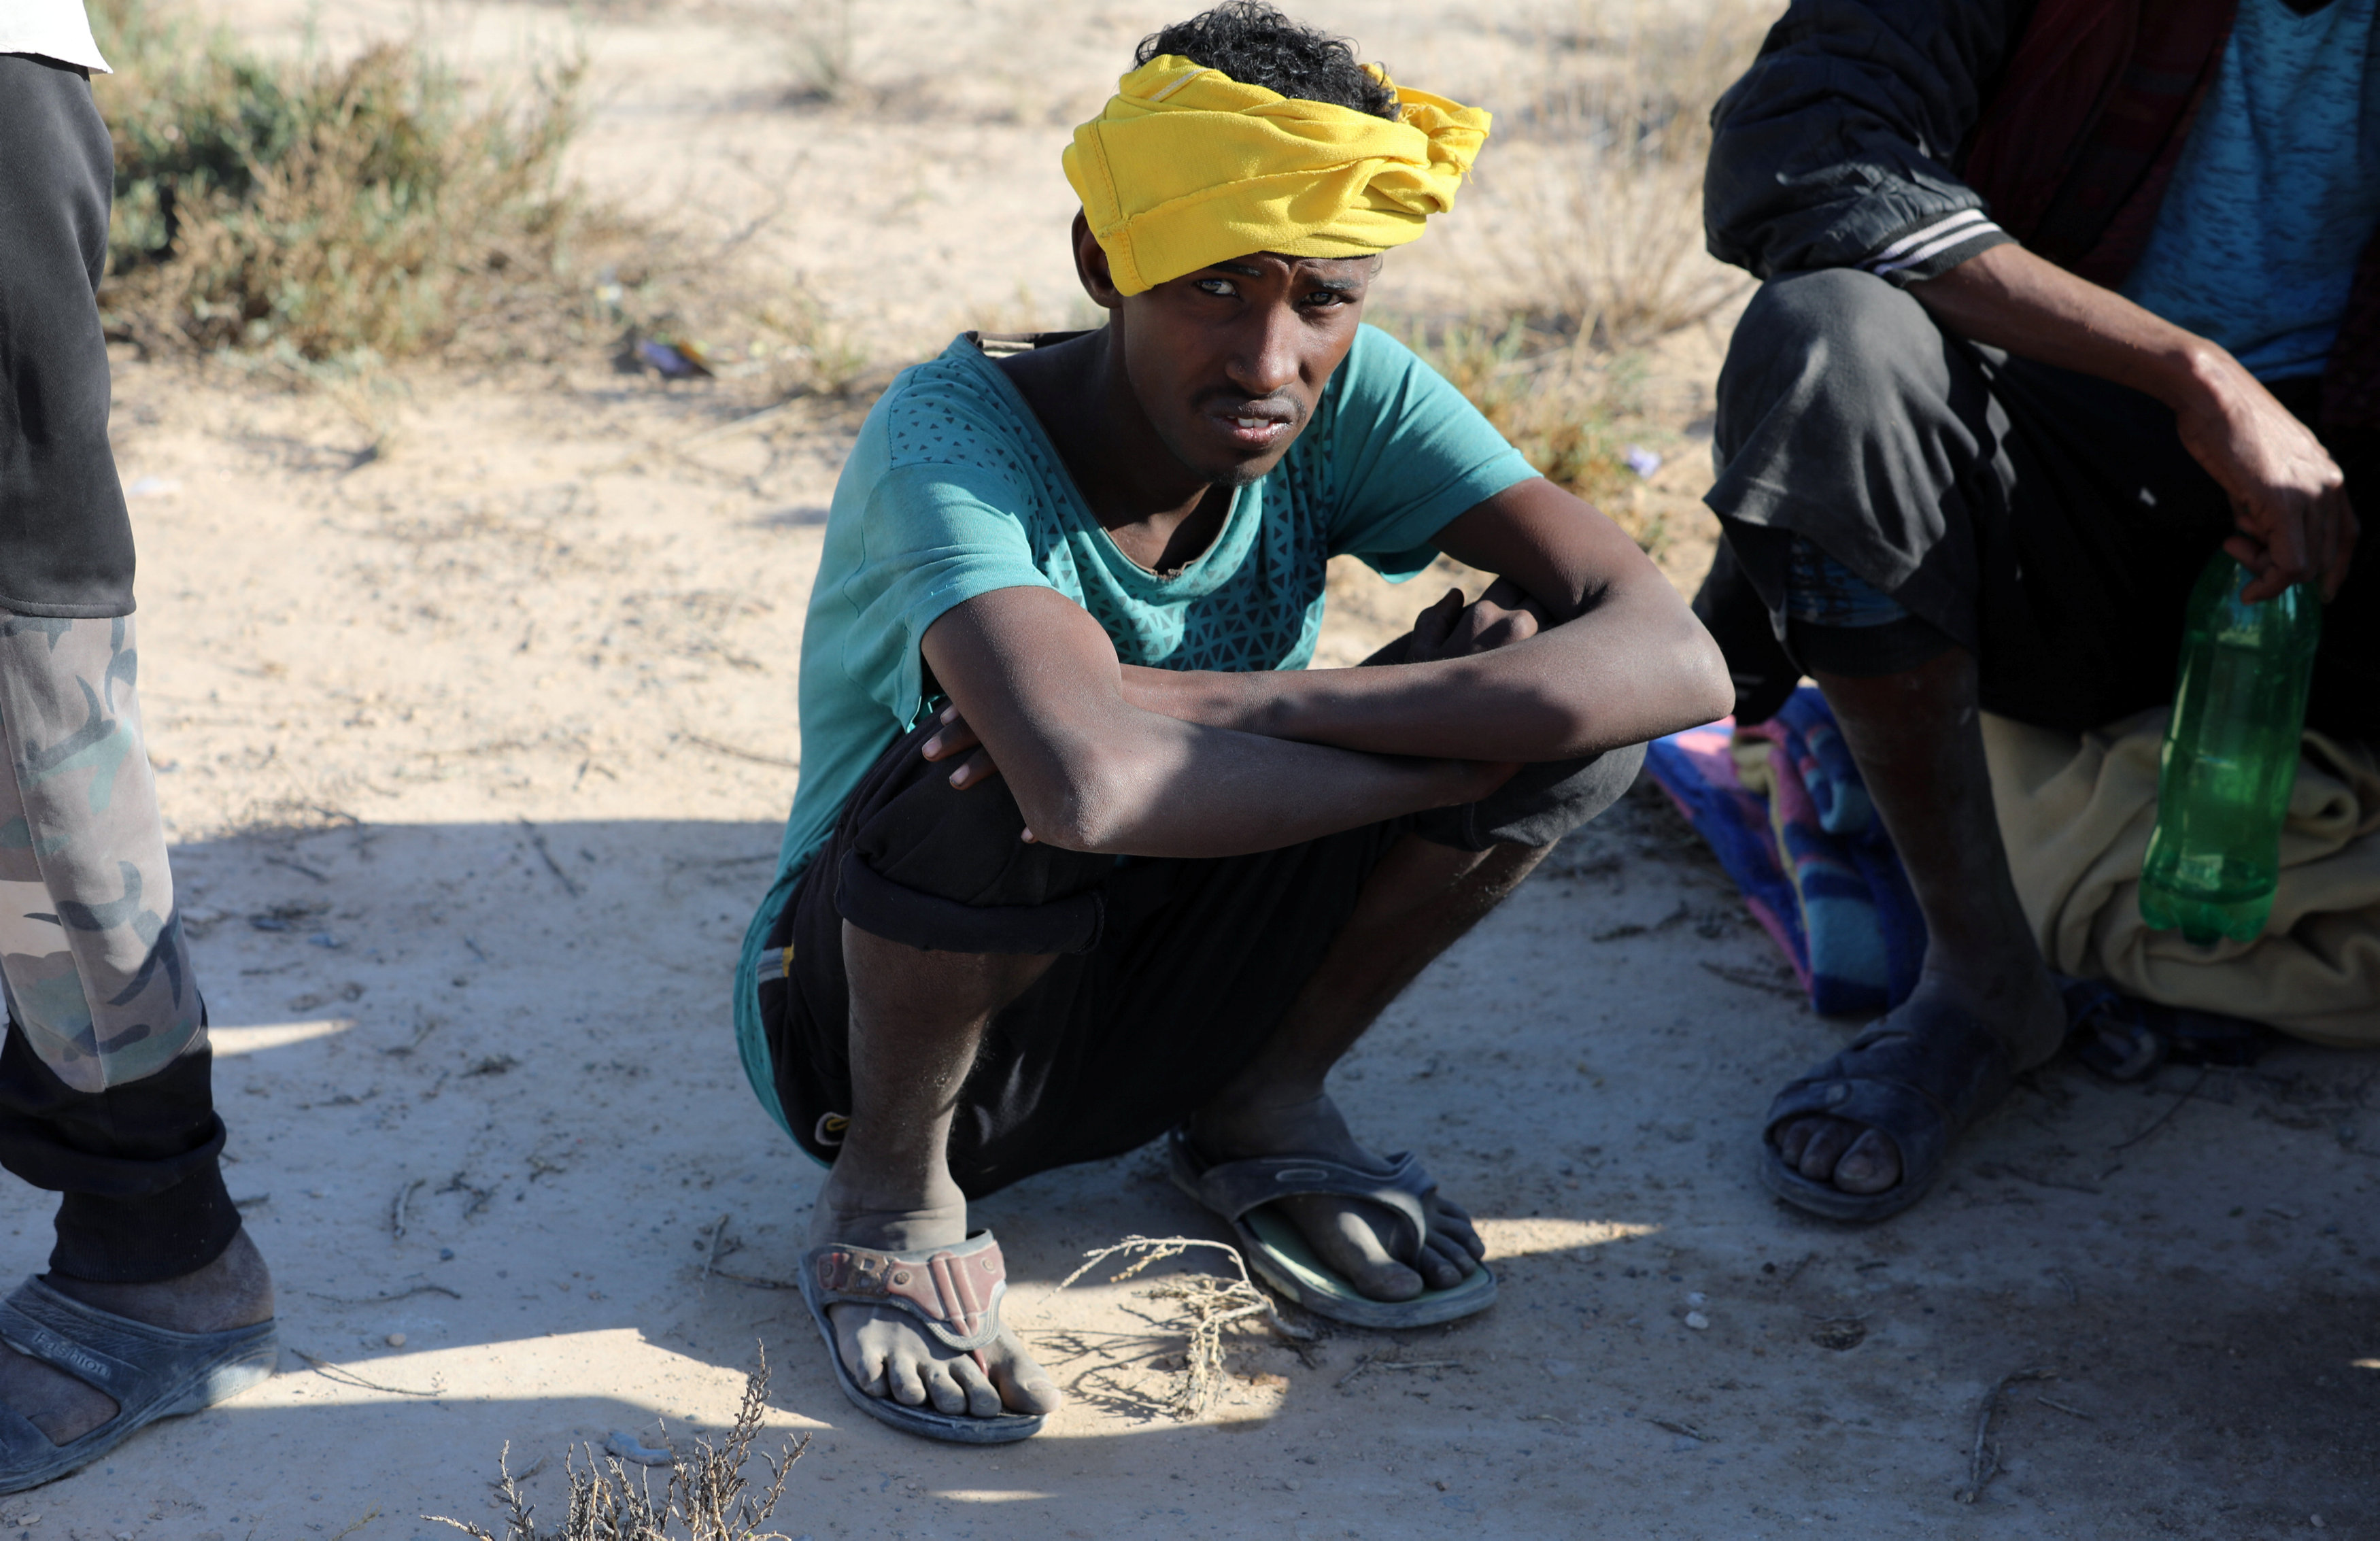 شاب محتجز فى ليبيا أثناء محاولته الهجرة بطريقة غير شرعية